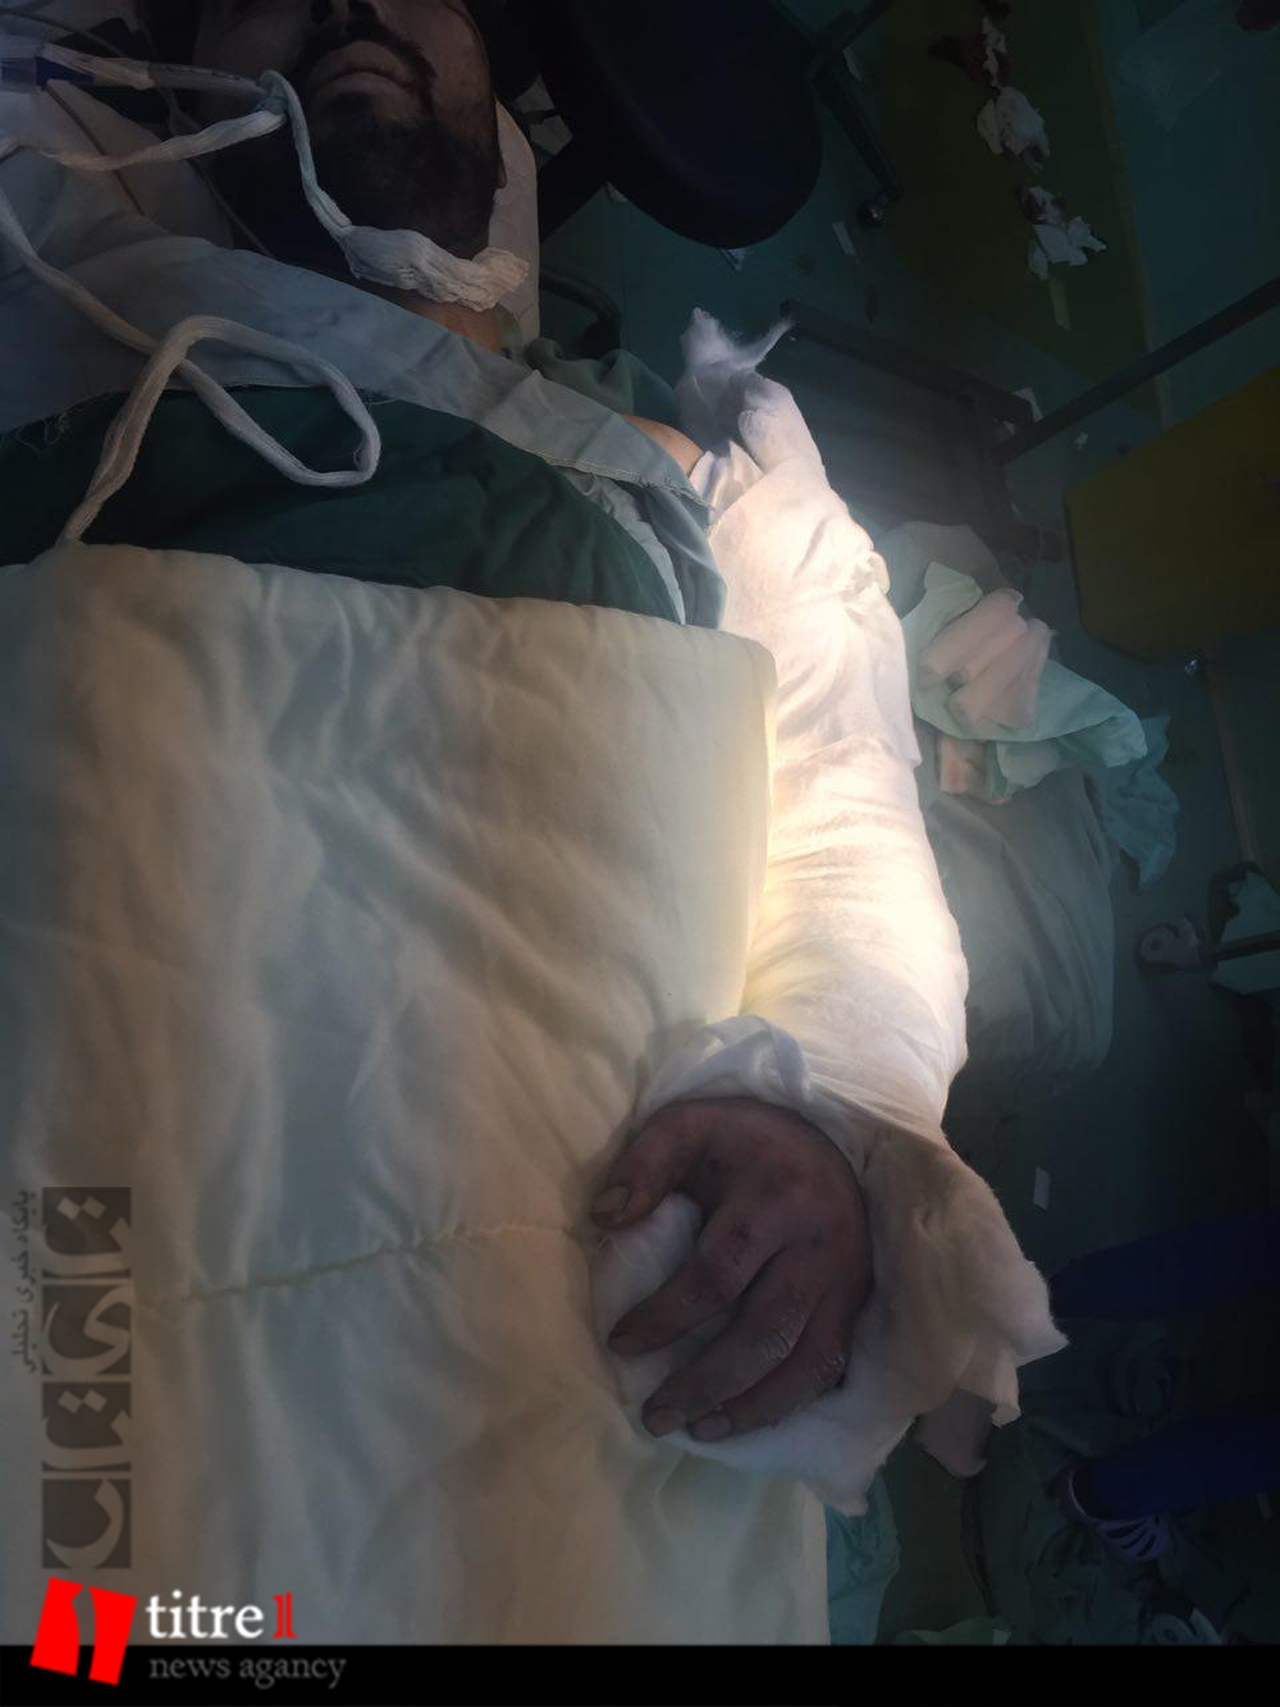 پیوند بازوی قطع شده جوان کارگر در بیمارستان کرج+ تصاویر+16